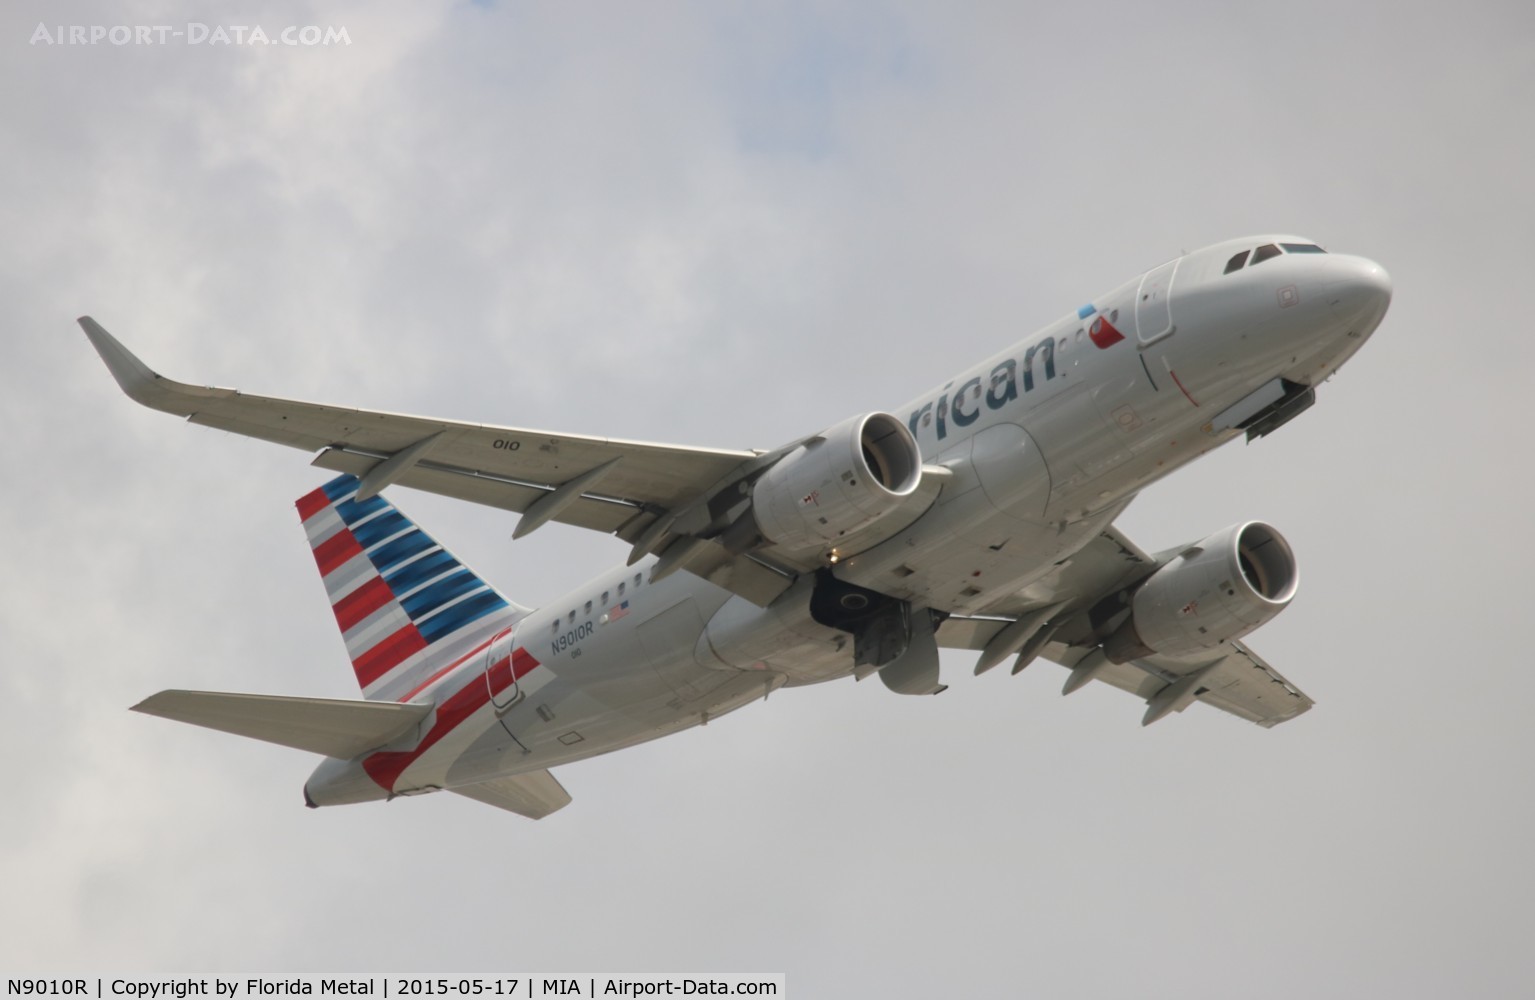 N9010R, 2013 Airbus A319-115 C/N 5789, American